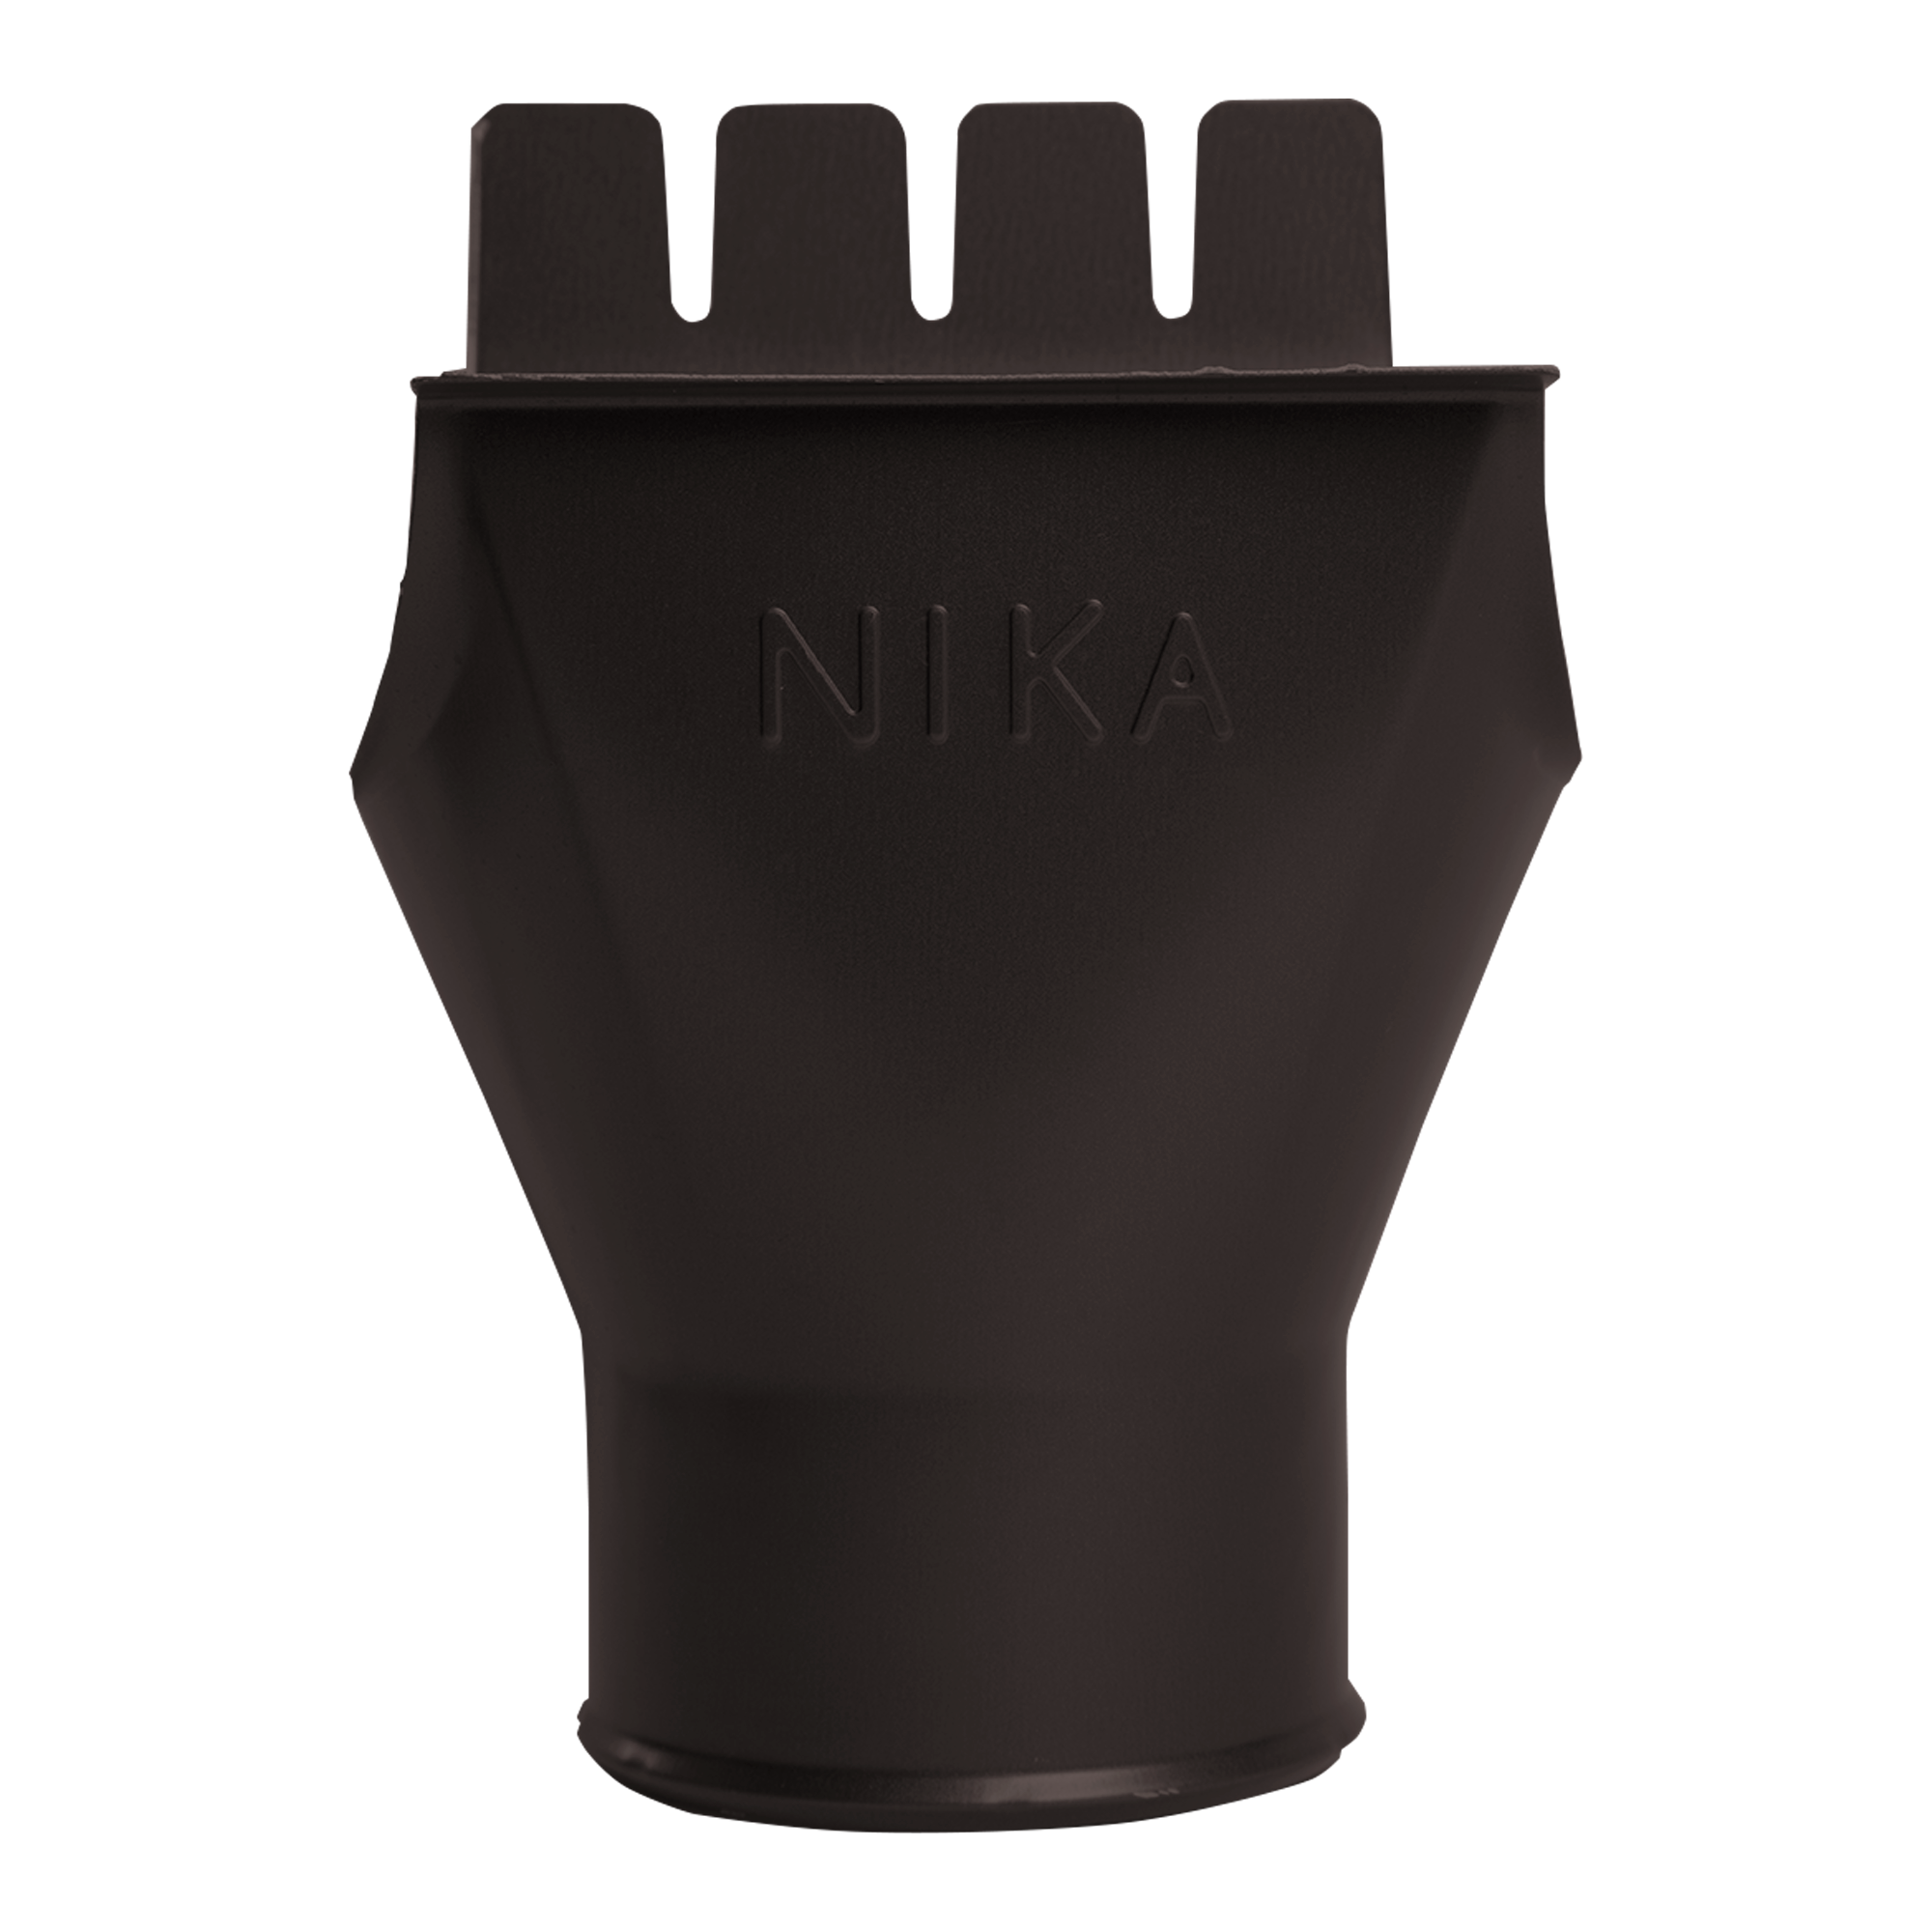 Воронка выпускная D125х100 NIKA Шоколадно-глянцевый 0,55 мм Полиэстер Водосточная система NIKA круглого сечения D125/100